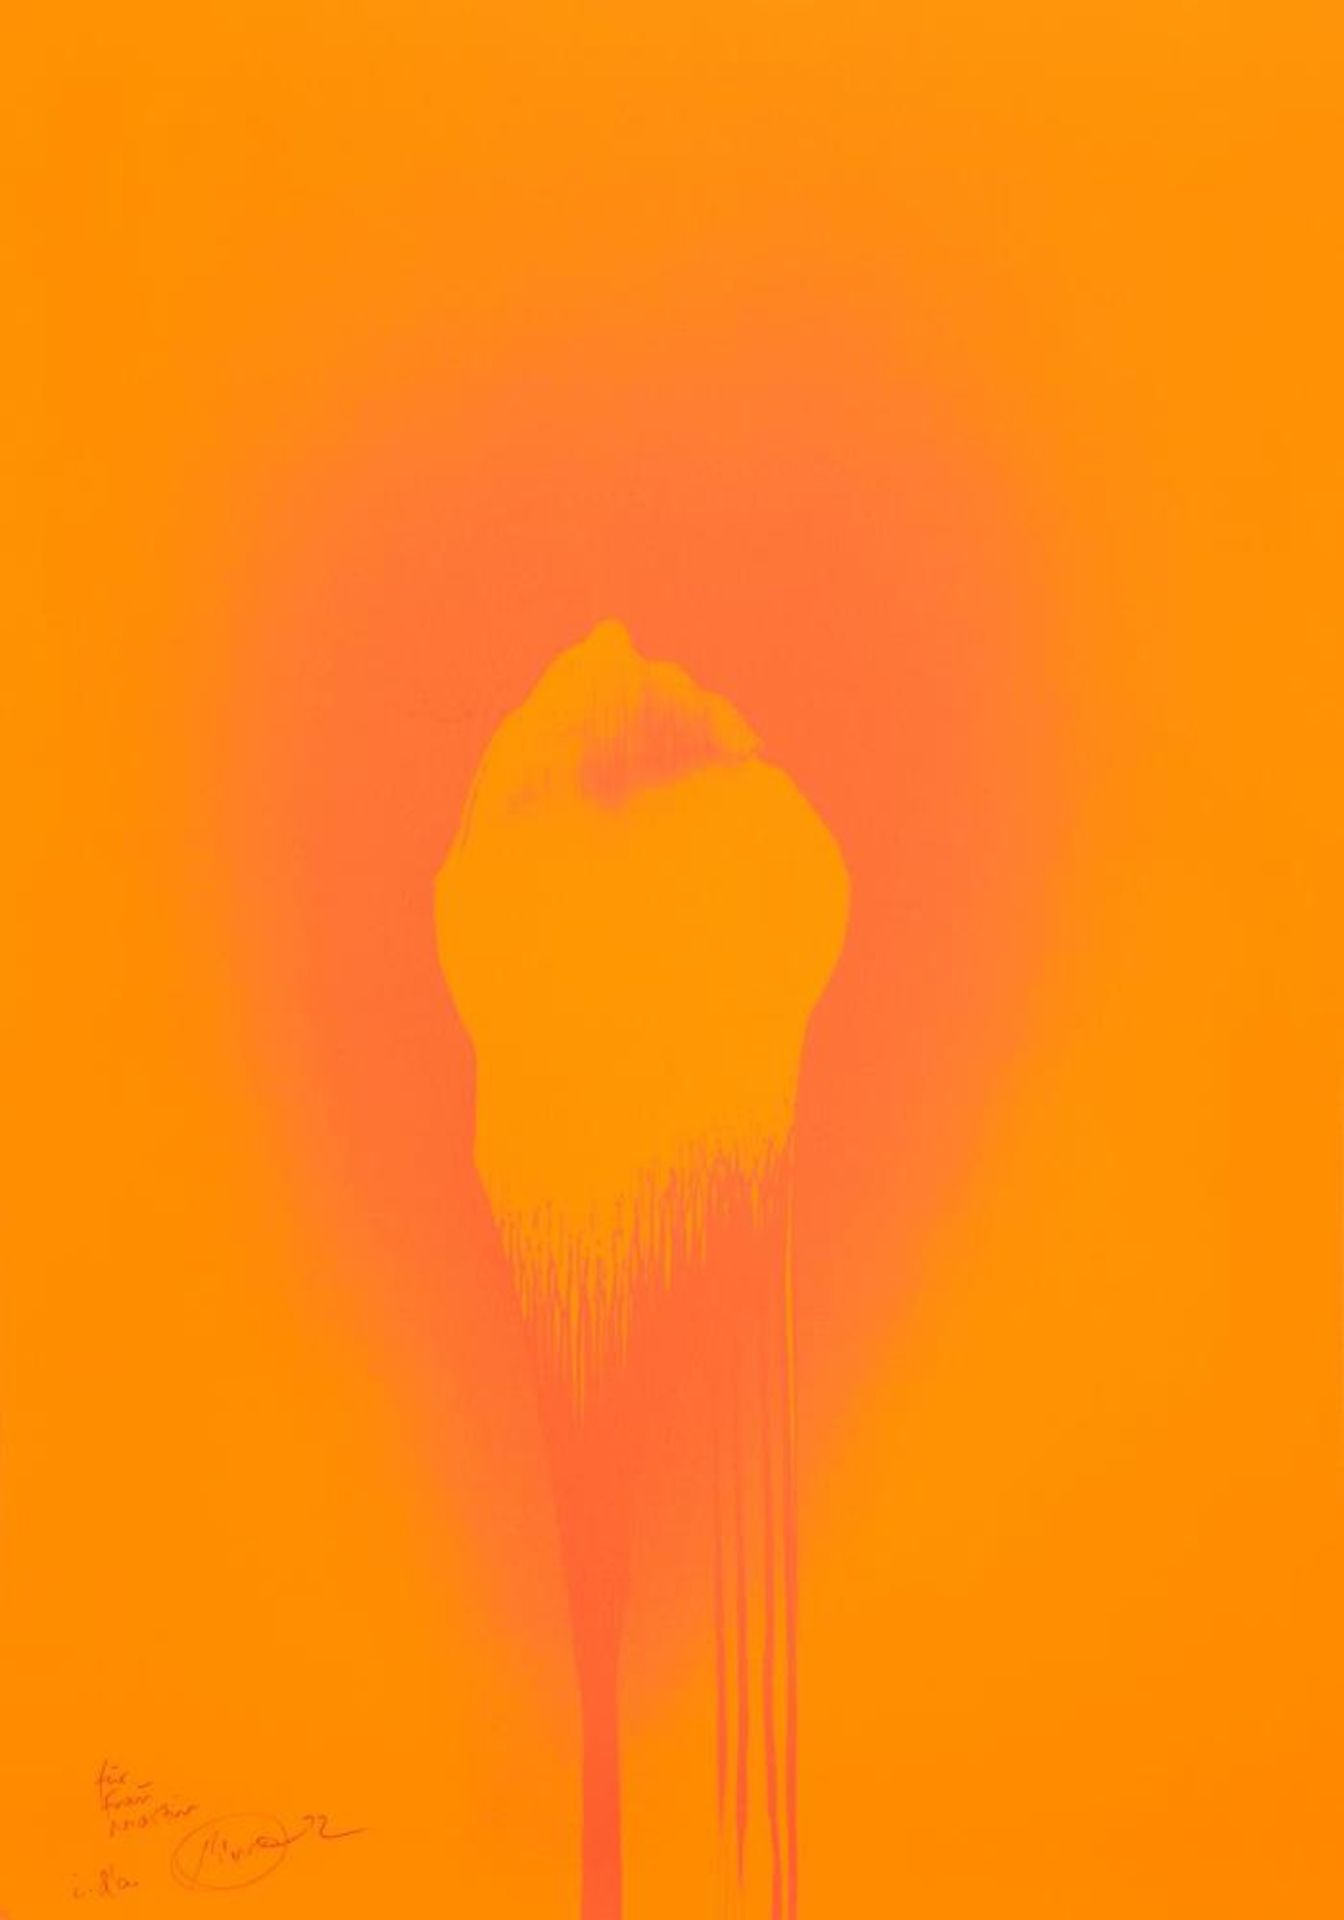 Otto Piene. Orange Yellow First. 1972. Farbserigraphie. 99 x 69,5cm